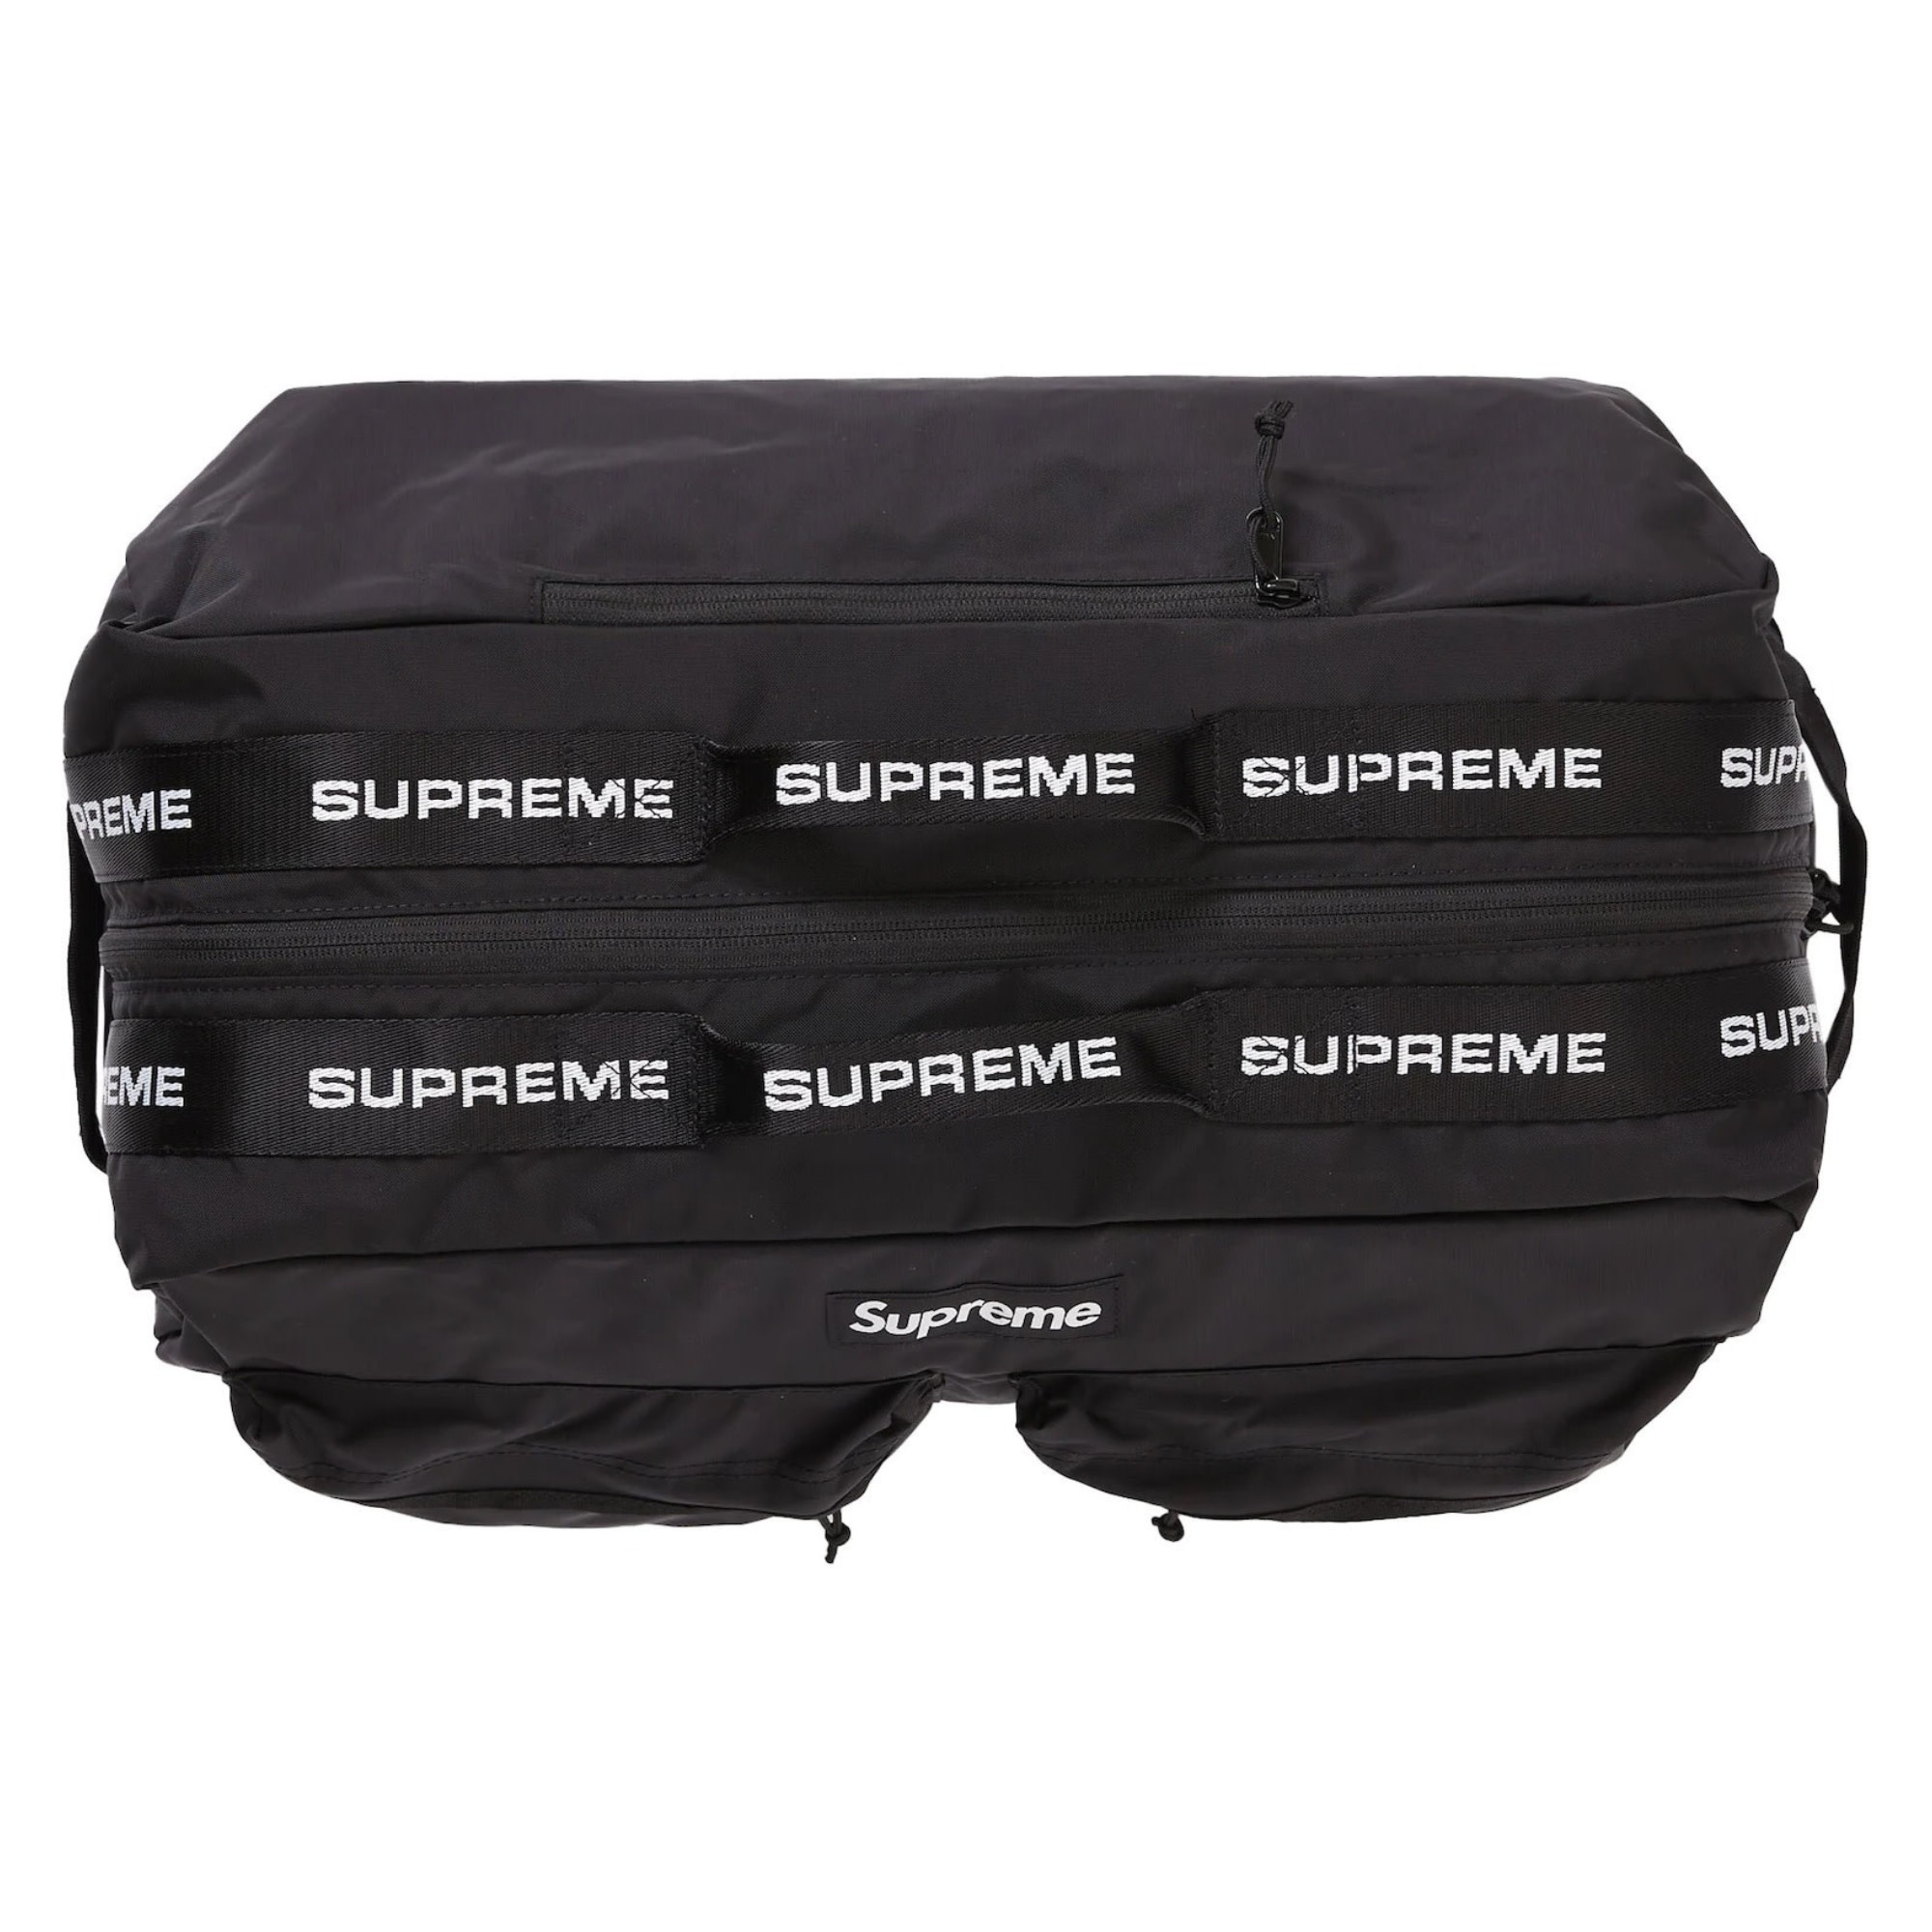 Supreme, Bags, Supreme Duffle Bag